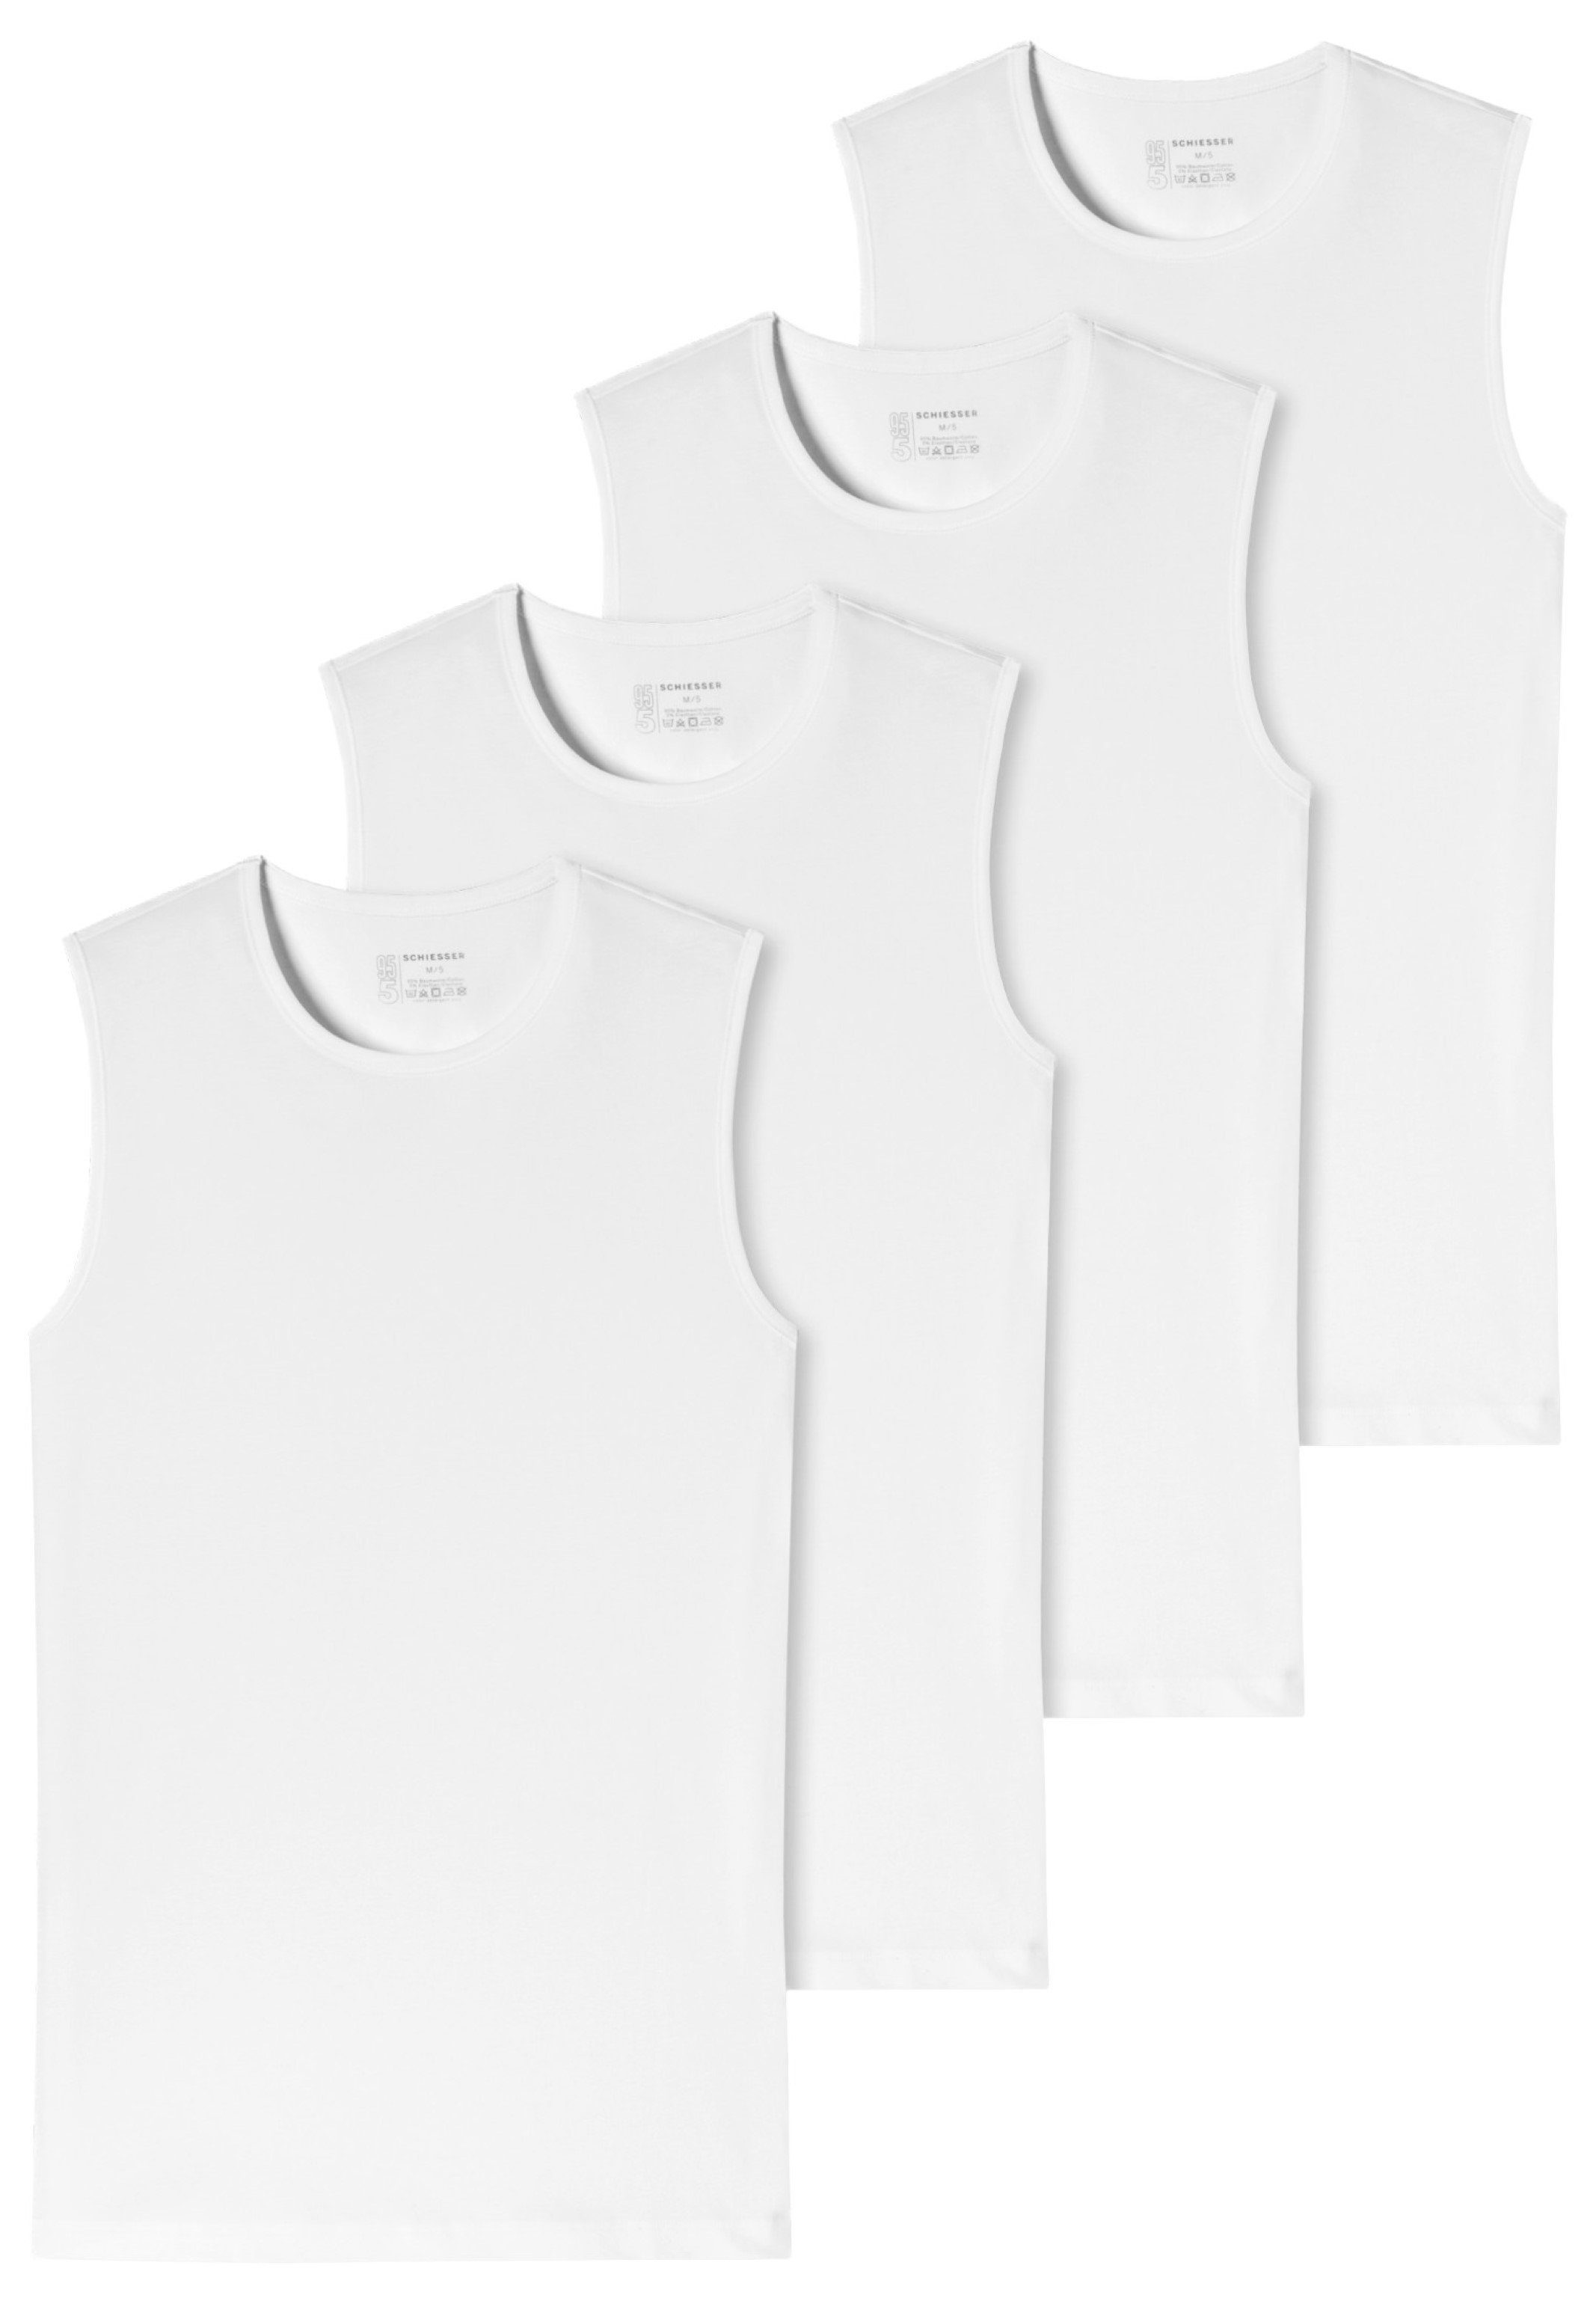 Wäsche/Bademode Unterhemden Schiesser Unterhemd 4er-Pack - 95/5 - Organic Cotton (4 Stück), Tank Top / Unterhemd mit Rundhals - 